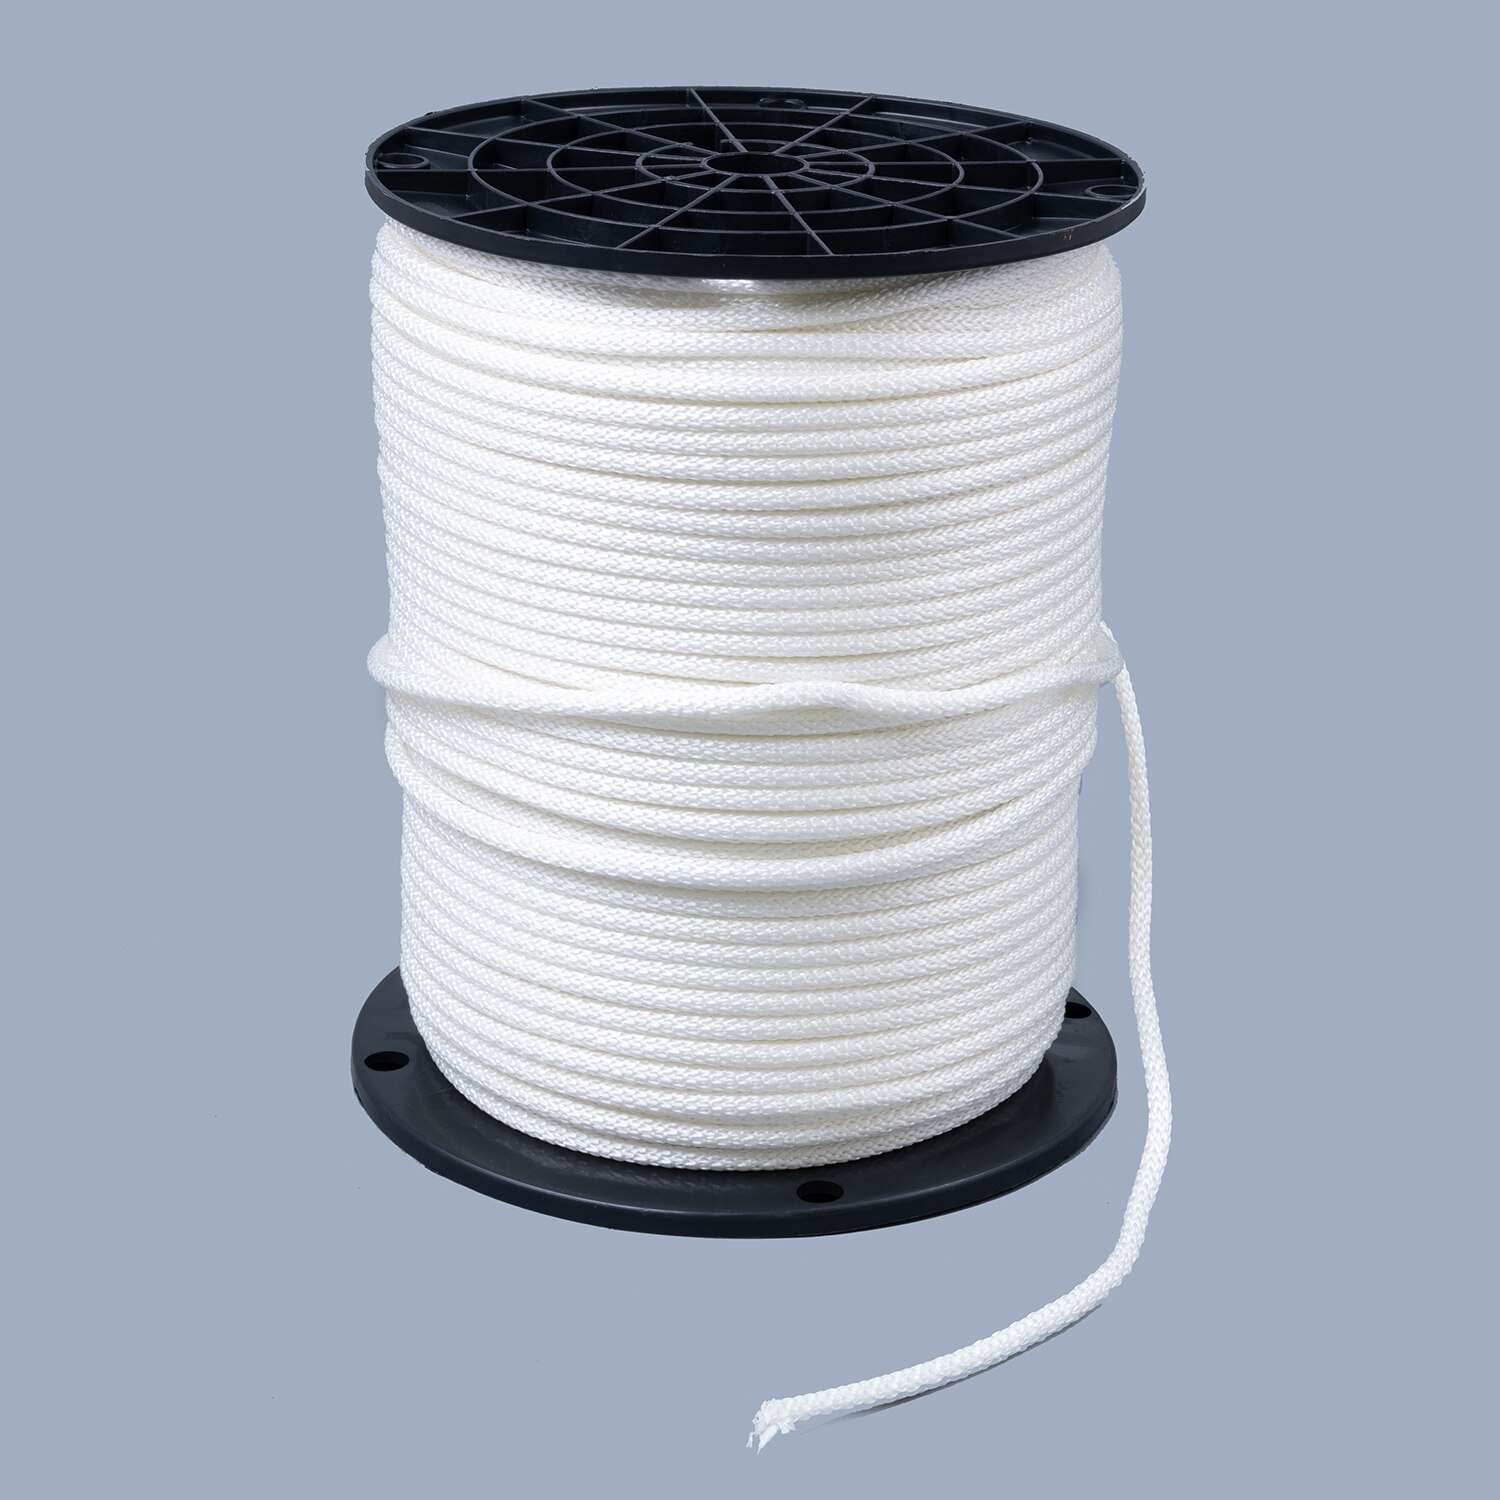 Neobraid Polyester Cord 3/16 White 6 (500 feet)